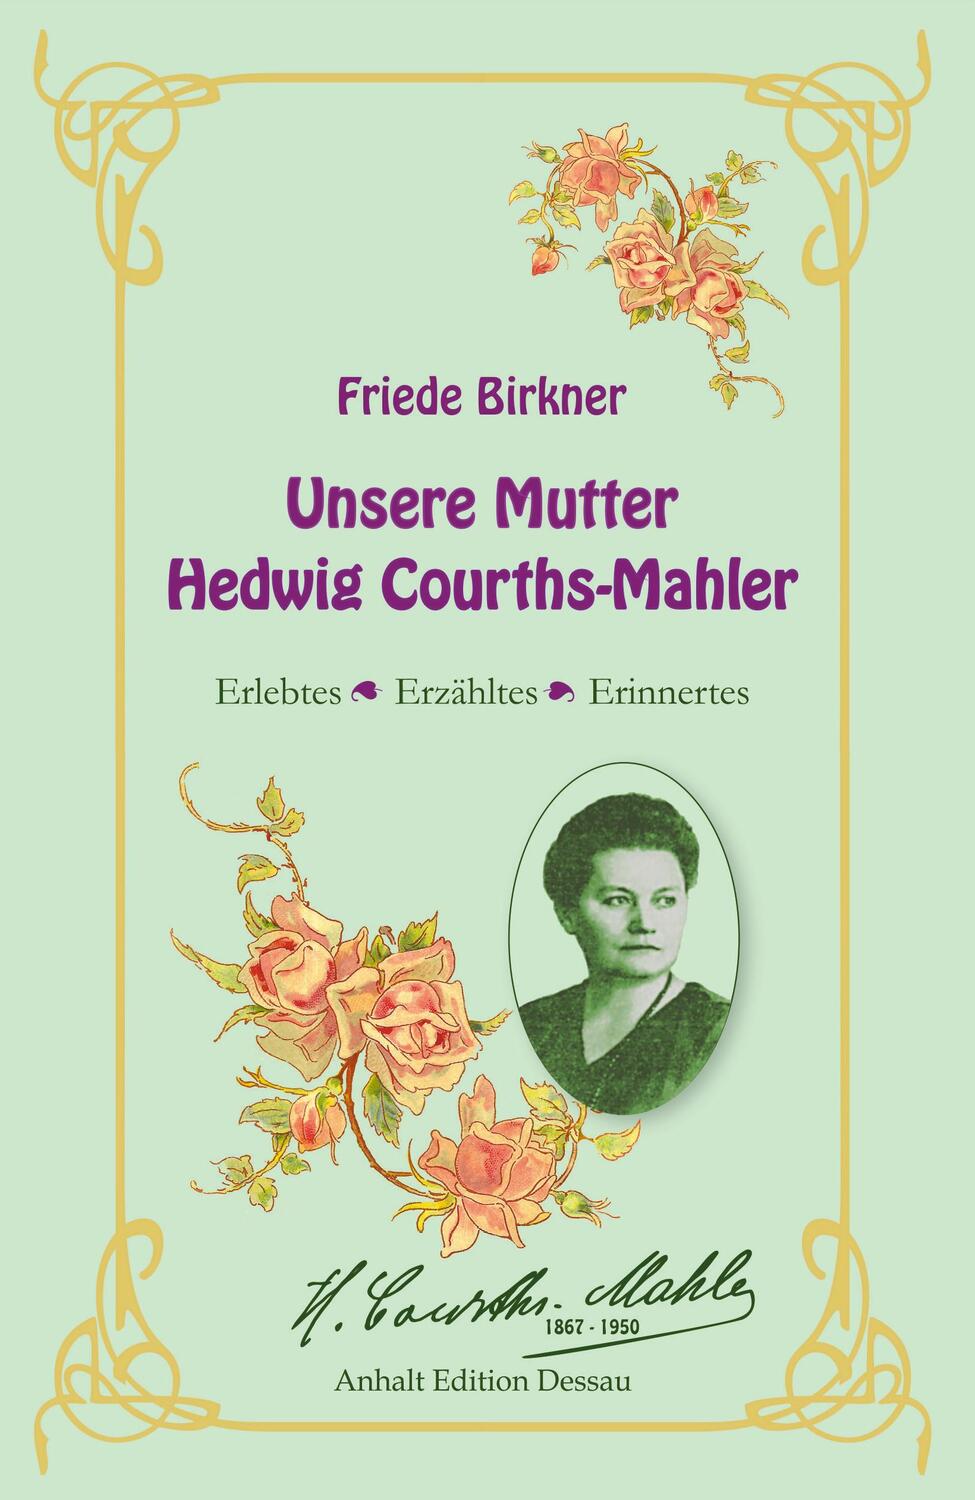 Friede Birkner - Unsere Mutter Hedwig Courths-Mahler